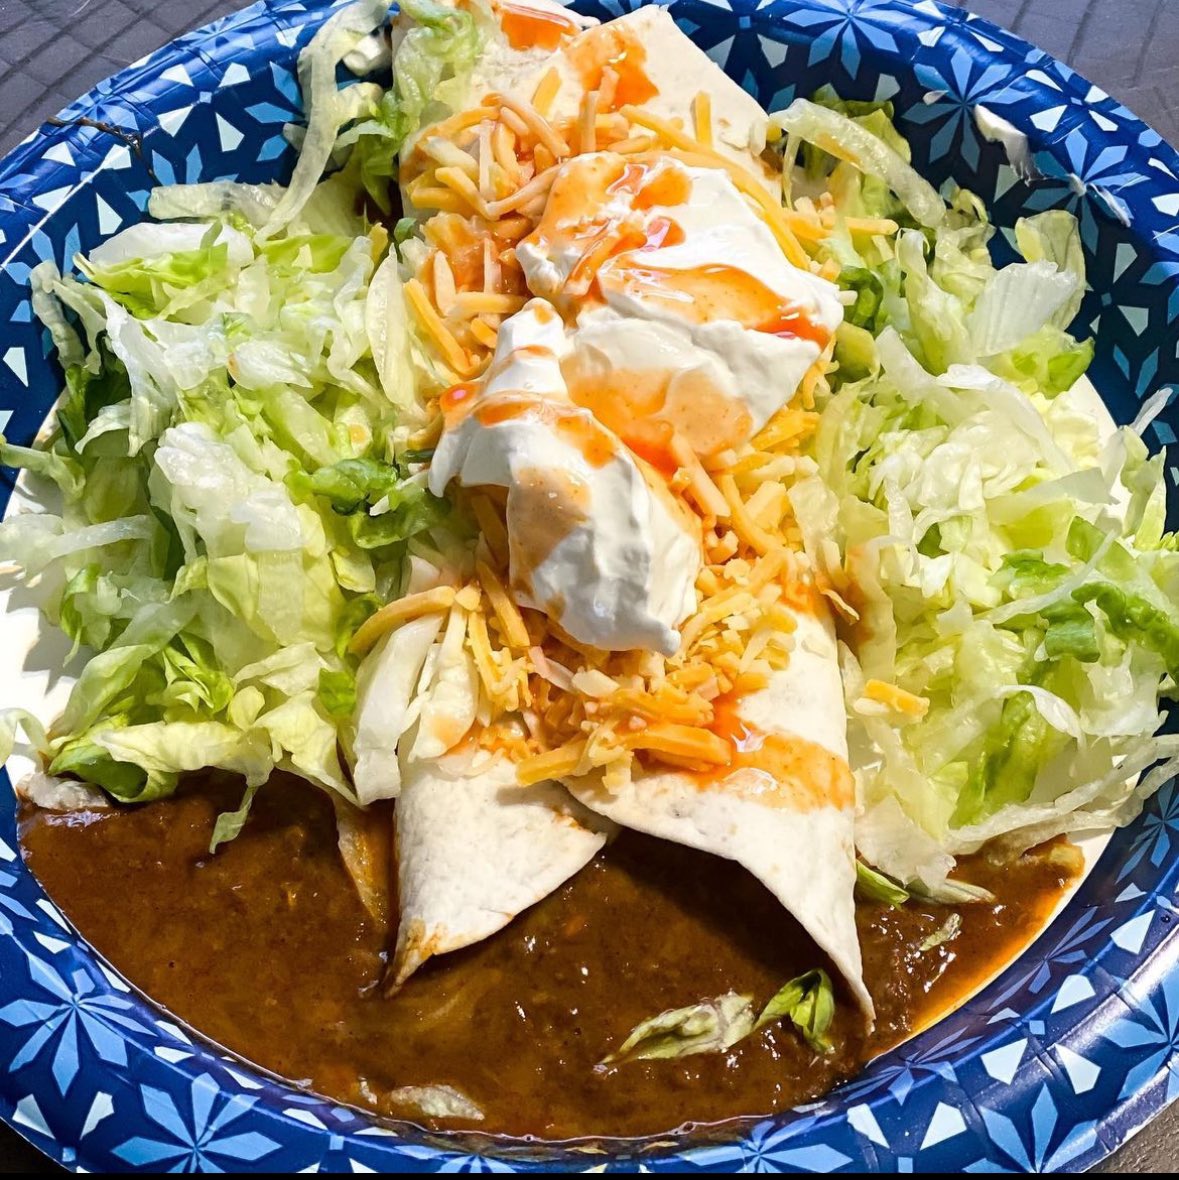 Rate this chili deluxe burrito from @Skyline_Chili 1-11 #NationalBurritoDay